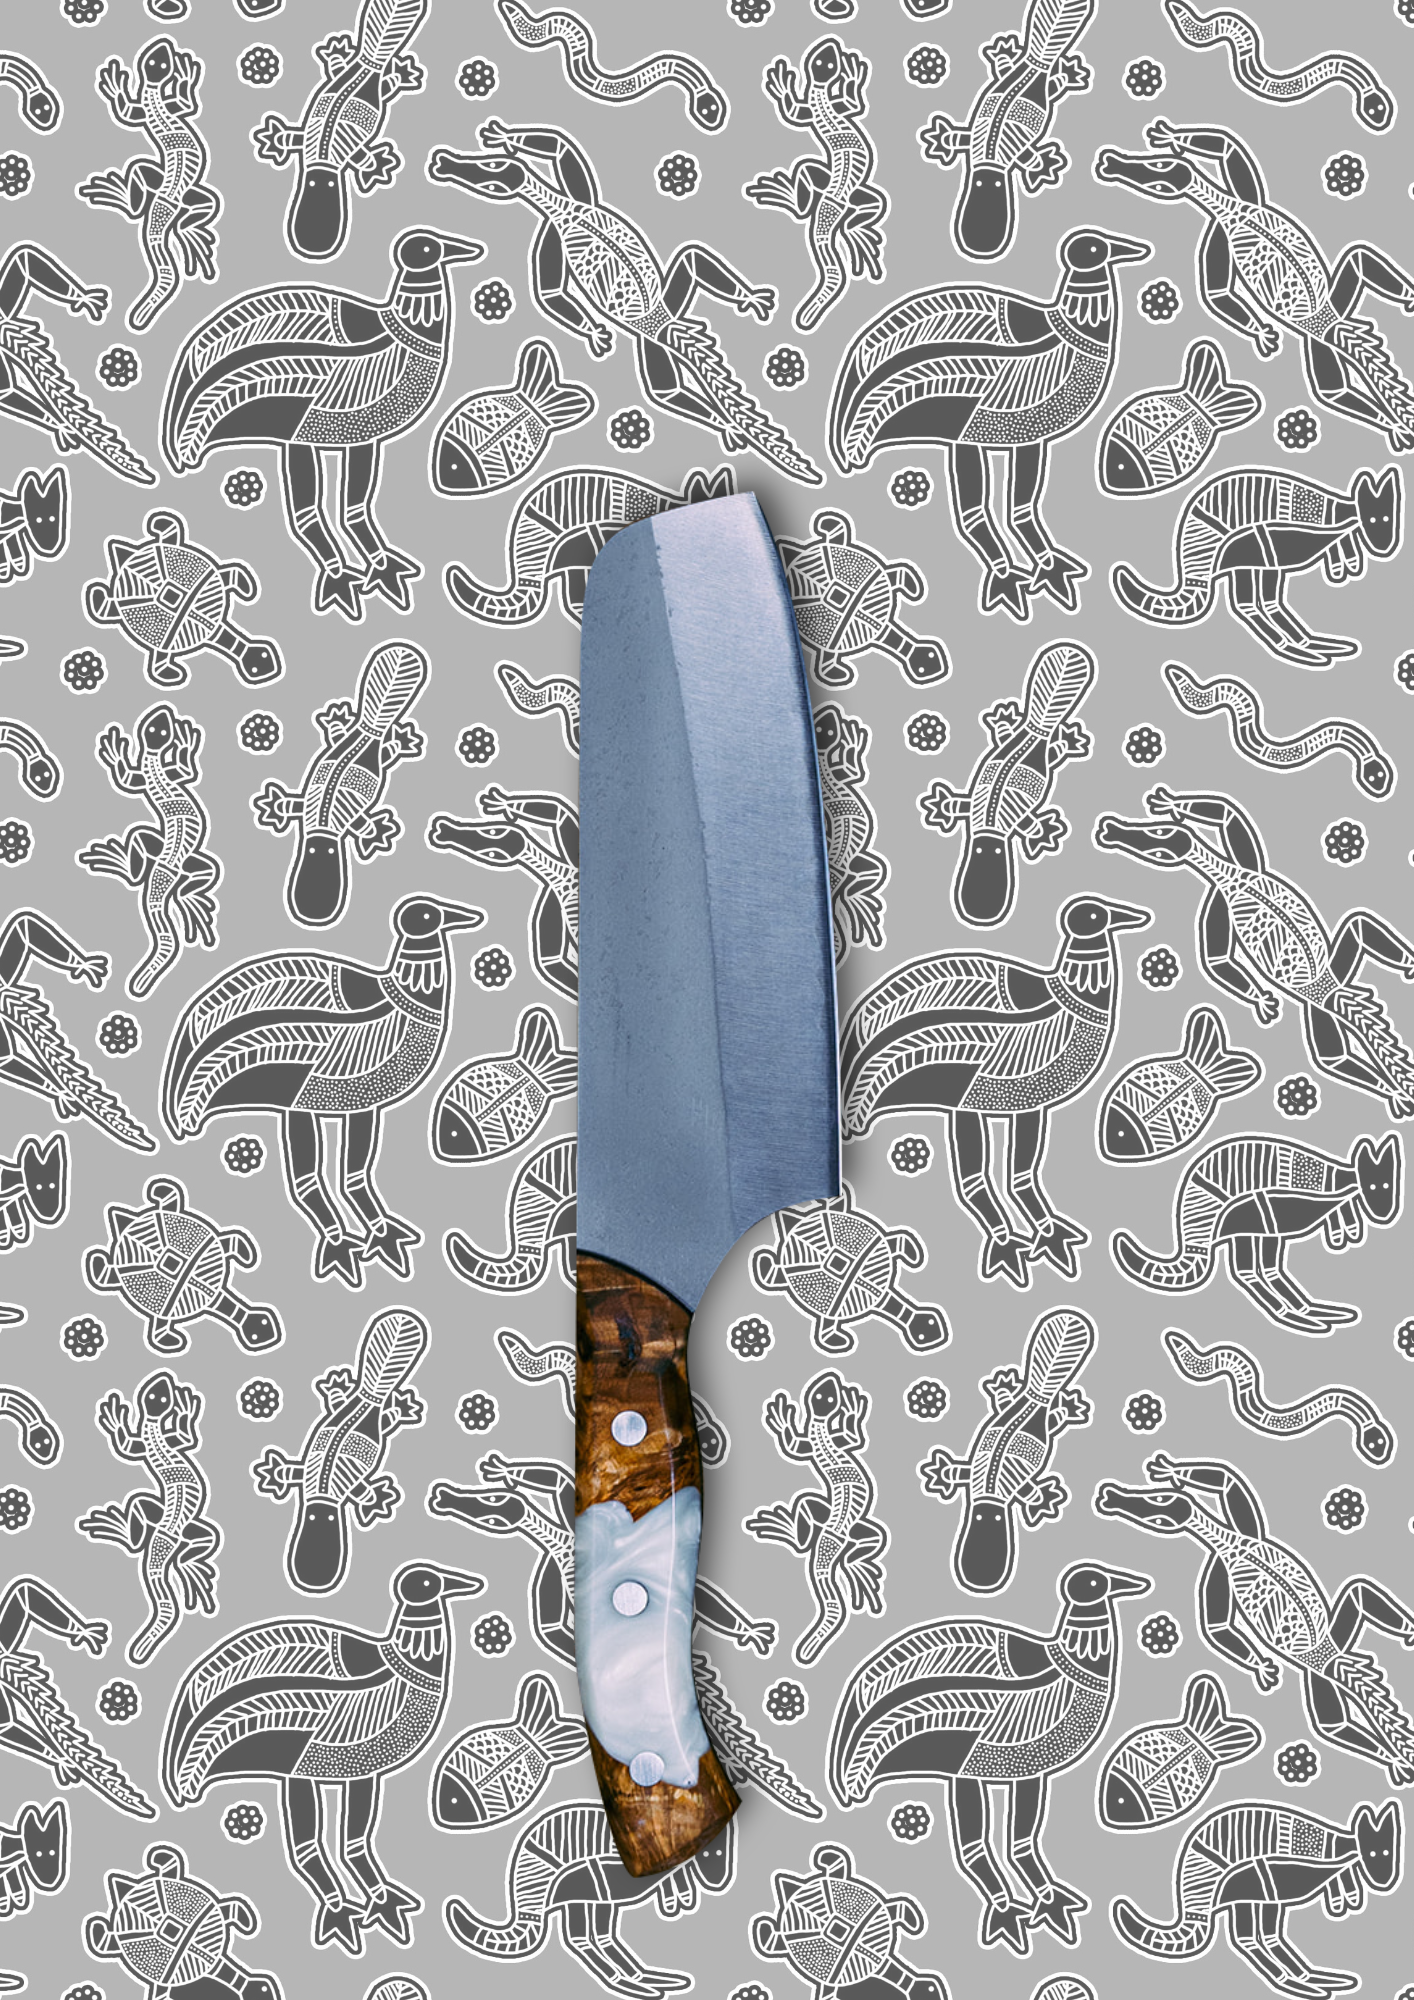 13 Knife Set | &quot;Big Red&quot; Kit - Koi Knives